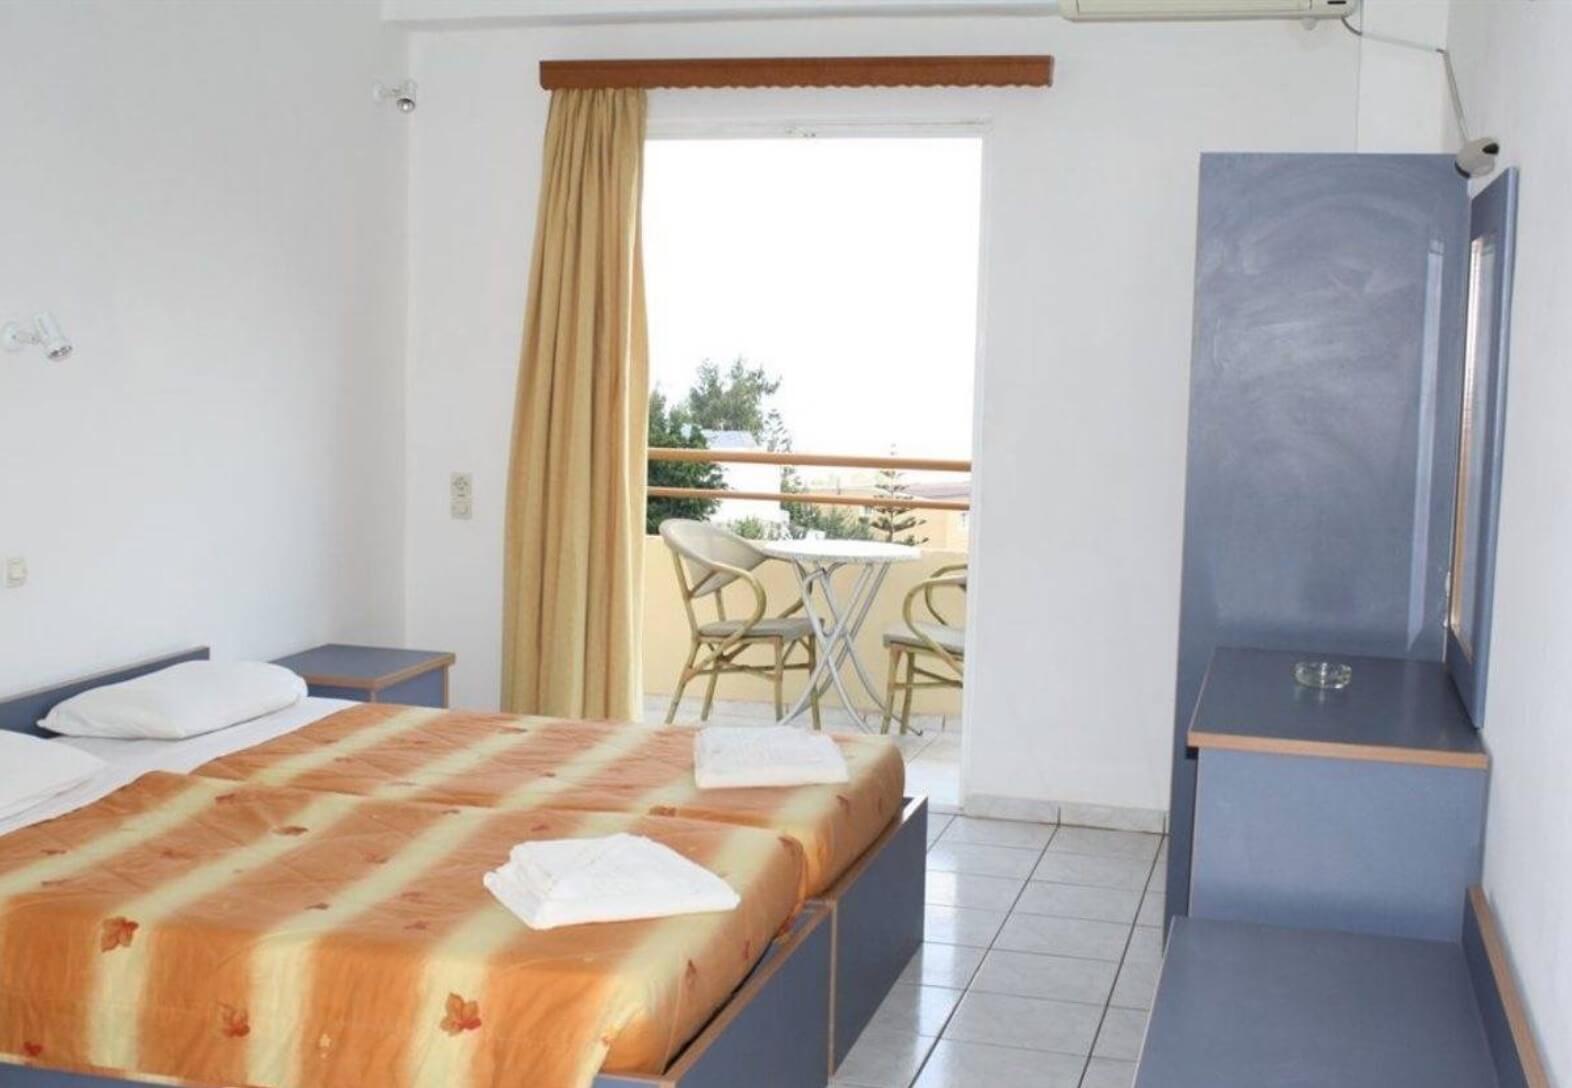 Тур на Крит на 7 ночей в Ретимно в отель Atali Village (Греция) с 31.05.18 от 48 844 рублей (AL) на двоих